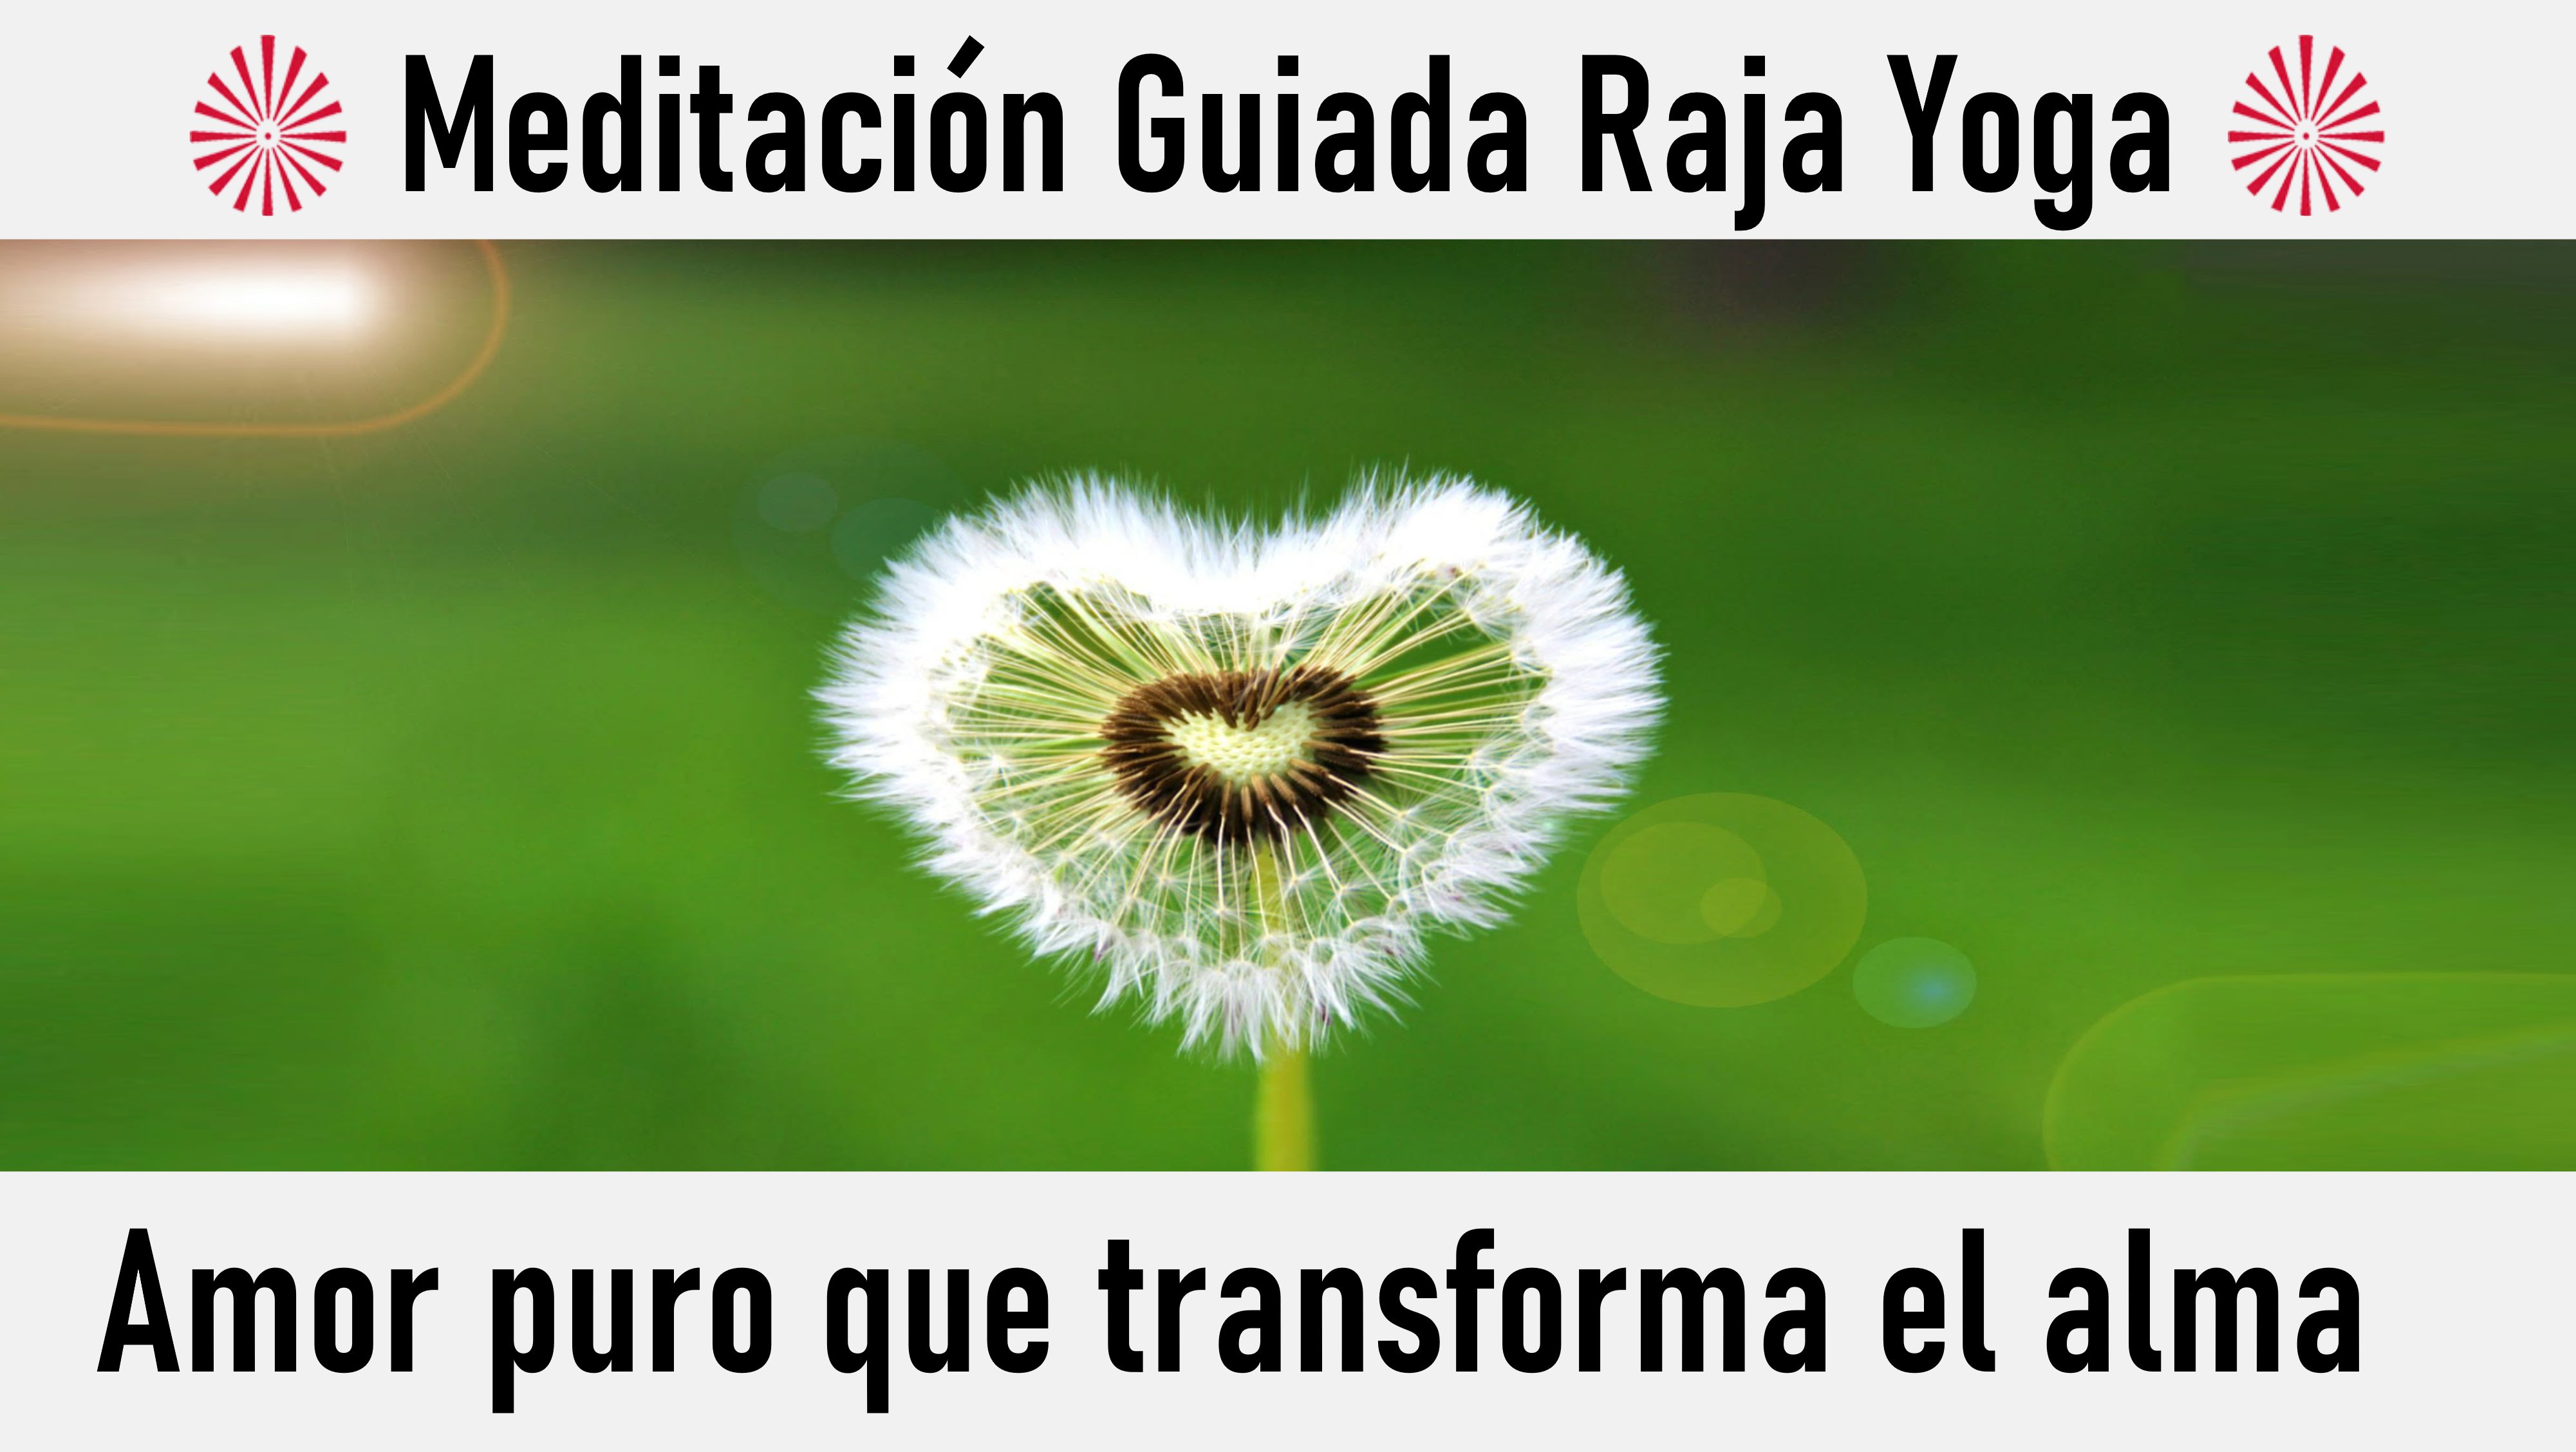 Meditación Raja Yoga: Amor puro que transforma el alma (14 Junio 2020) On-line desde Valencia